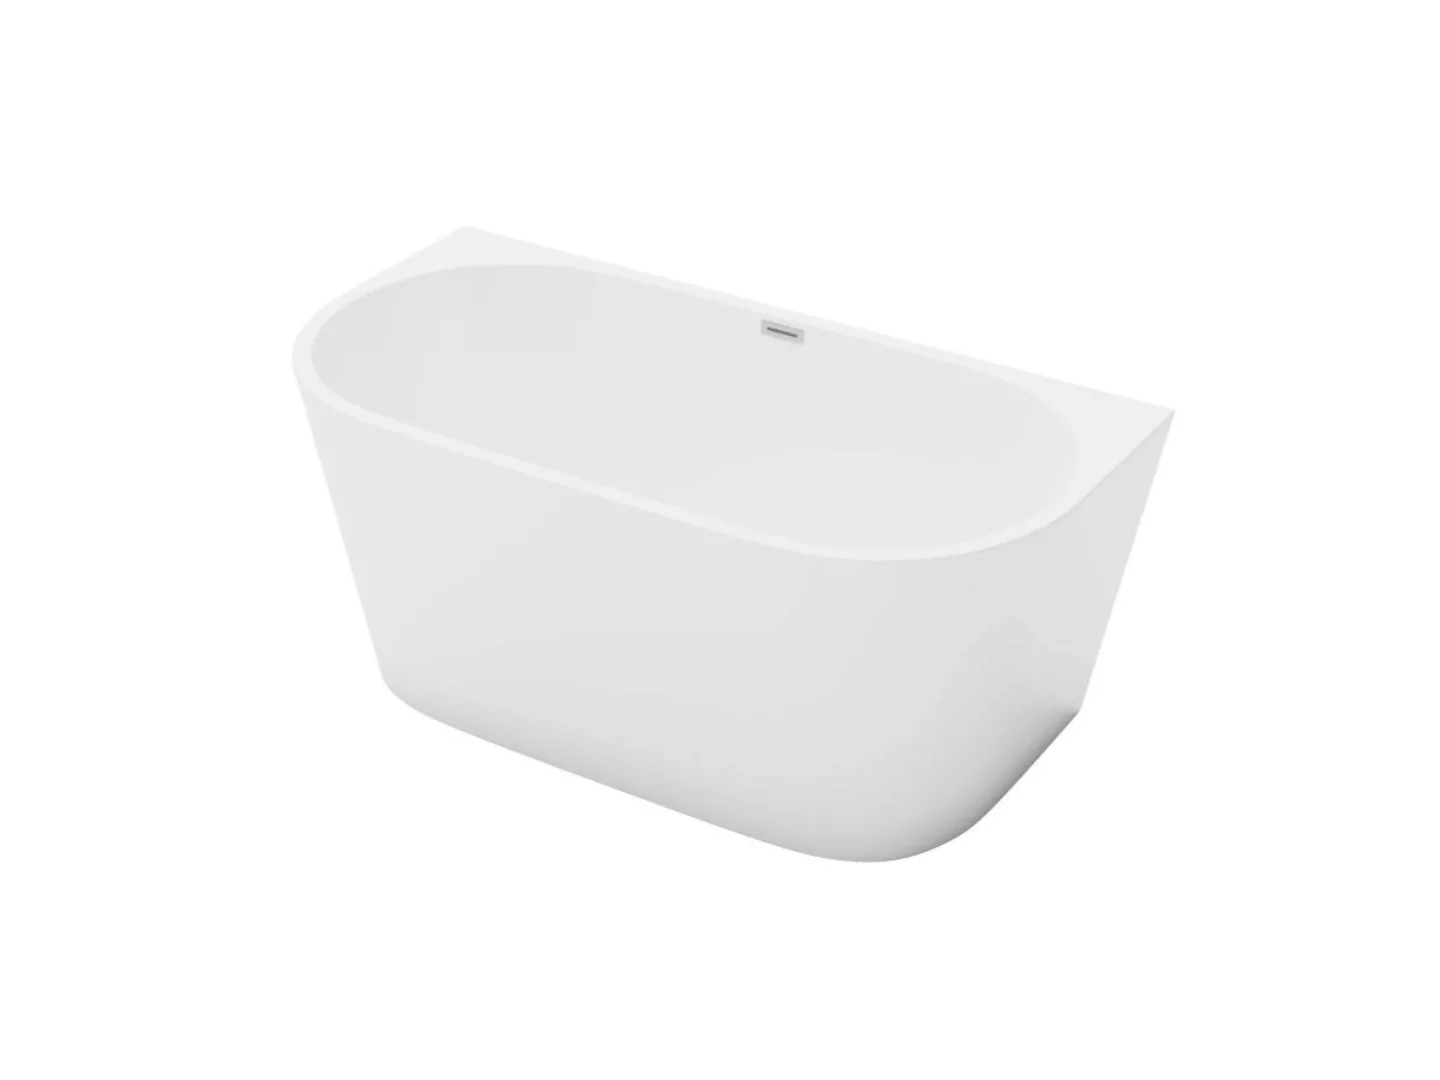 Halb freistehende Badewanne - 175L - 130 x 71,5 x 58 cm - Acryl - Weiß - DI günstig online kaufen